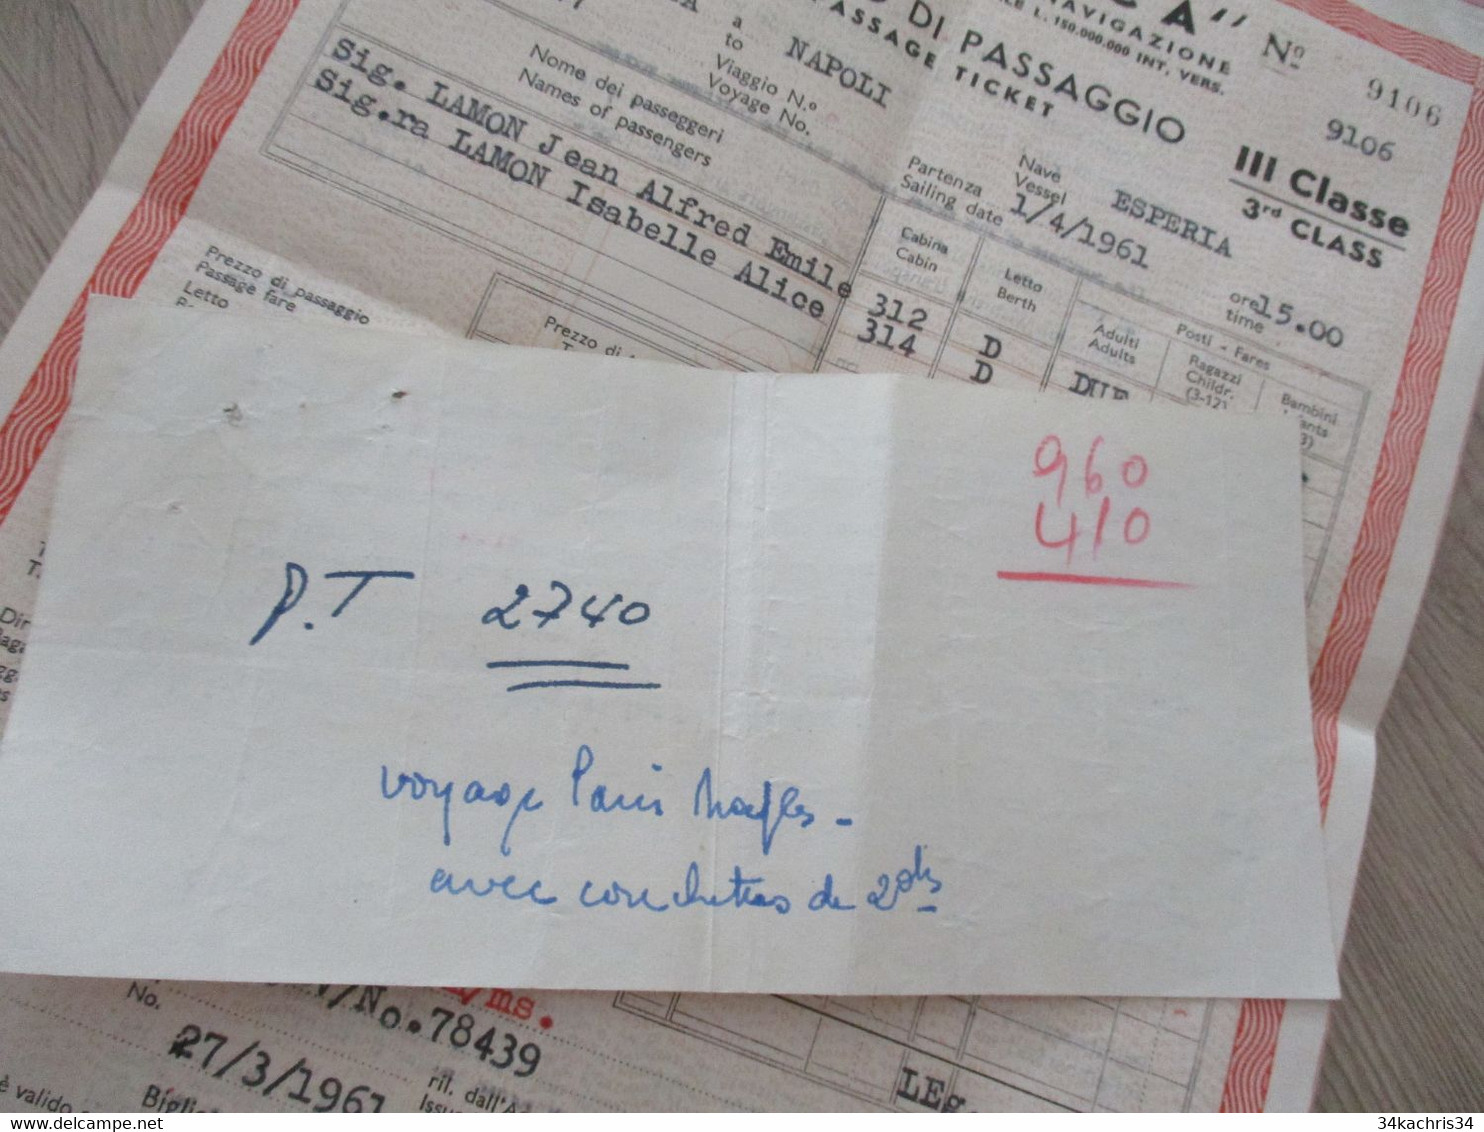 Billet De Passager Bibglietto Passaggio Adritica Italie 1961 1 TP Fiscal Egypte Napoli/Alessandria - Europe